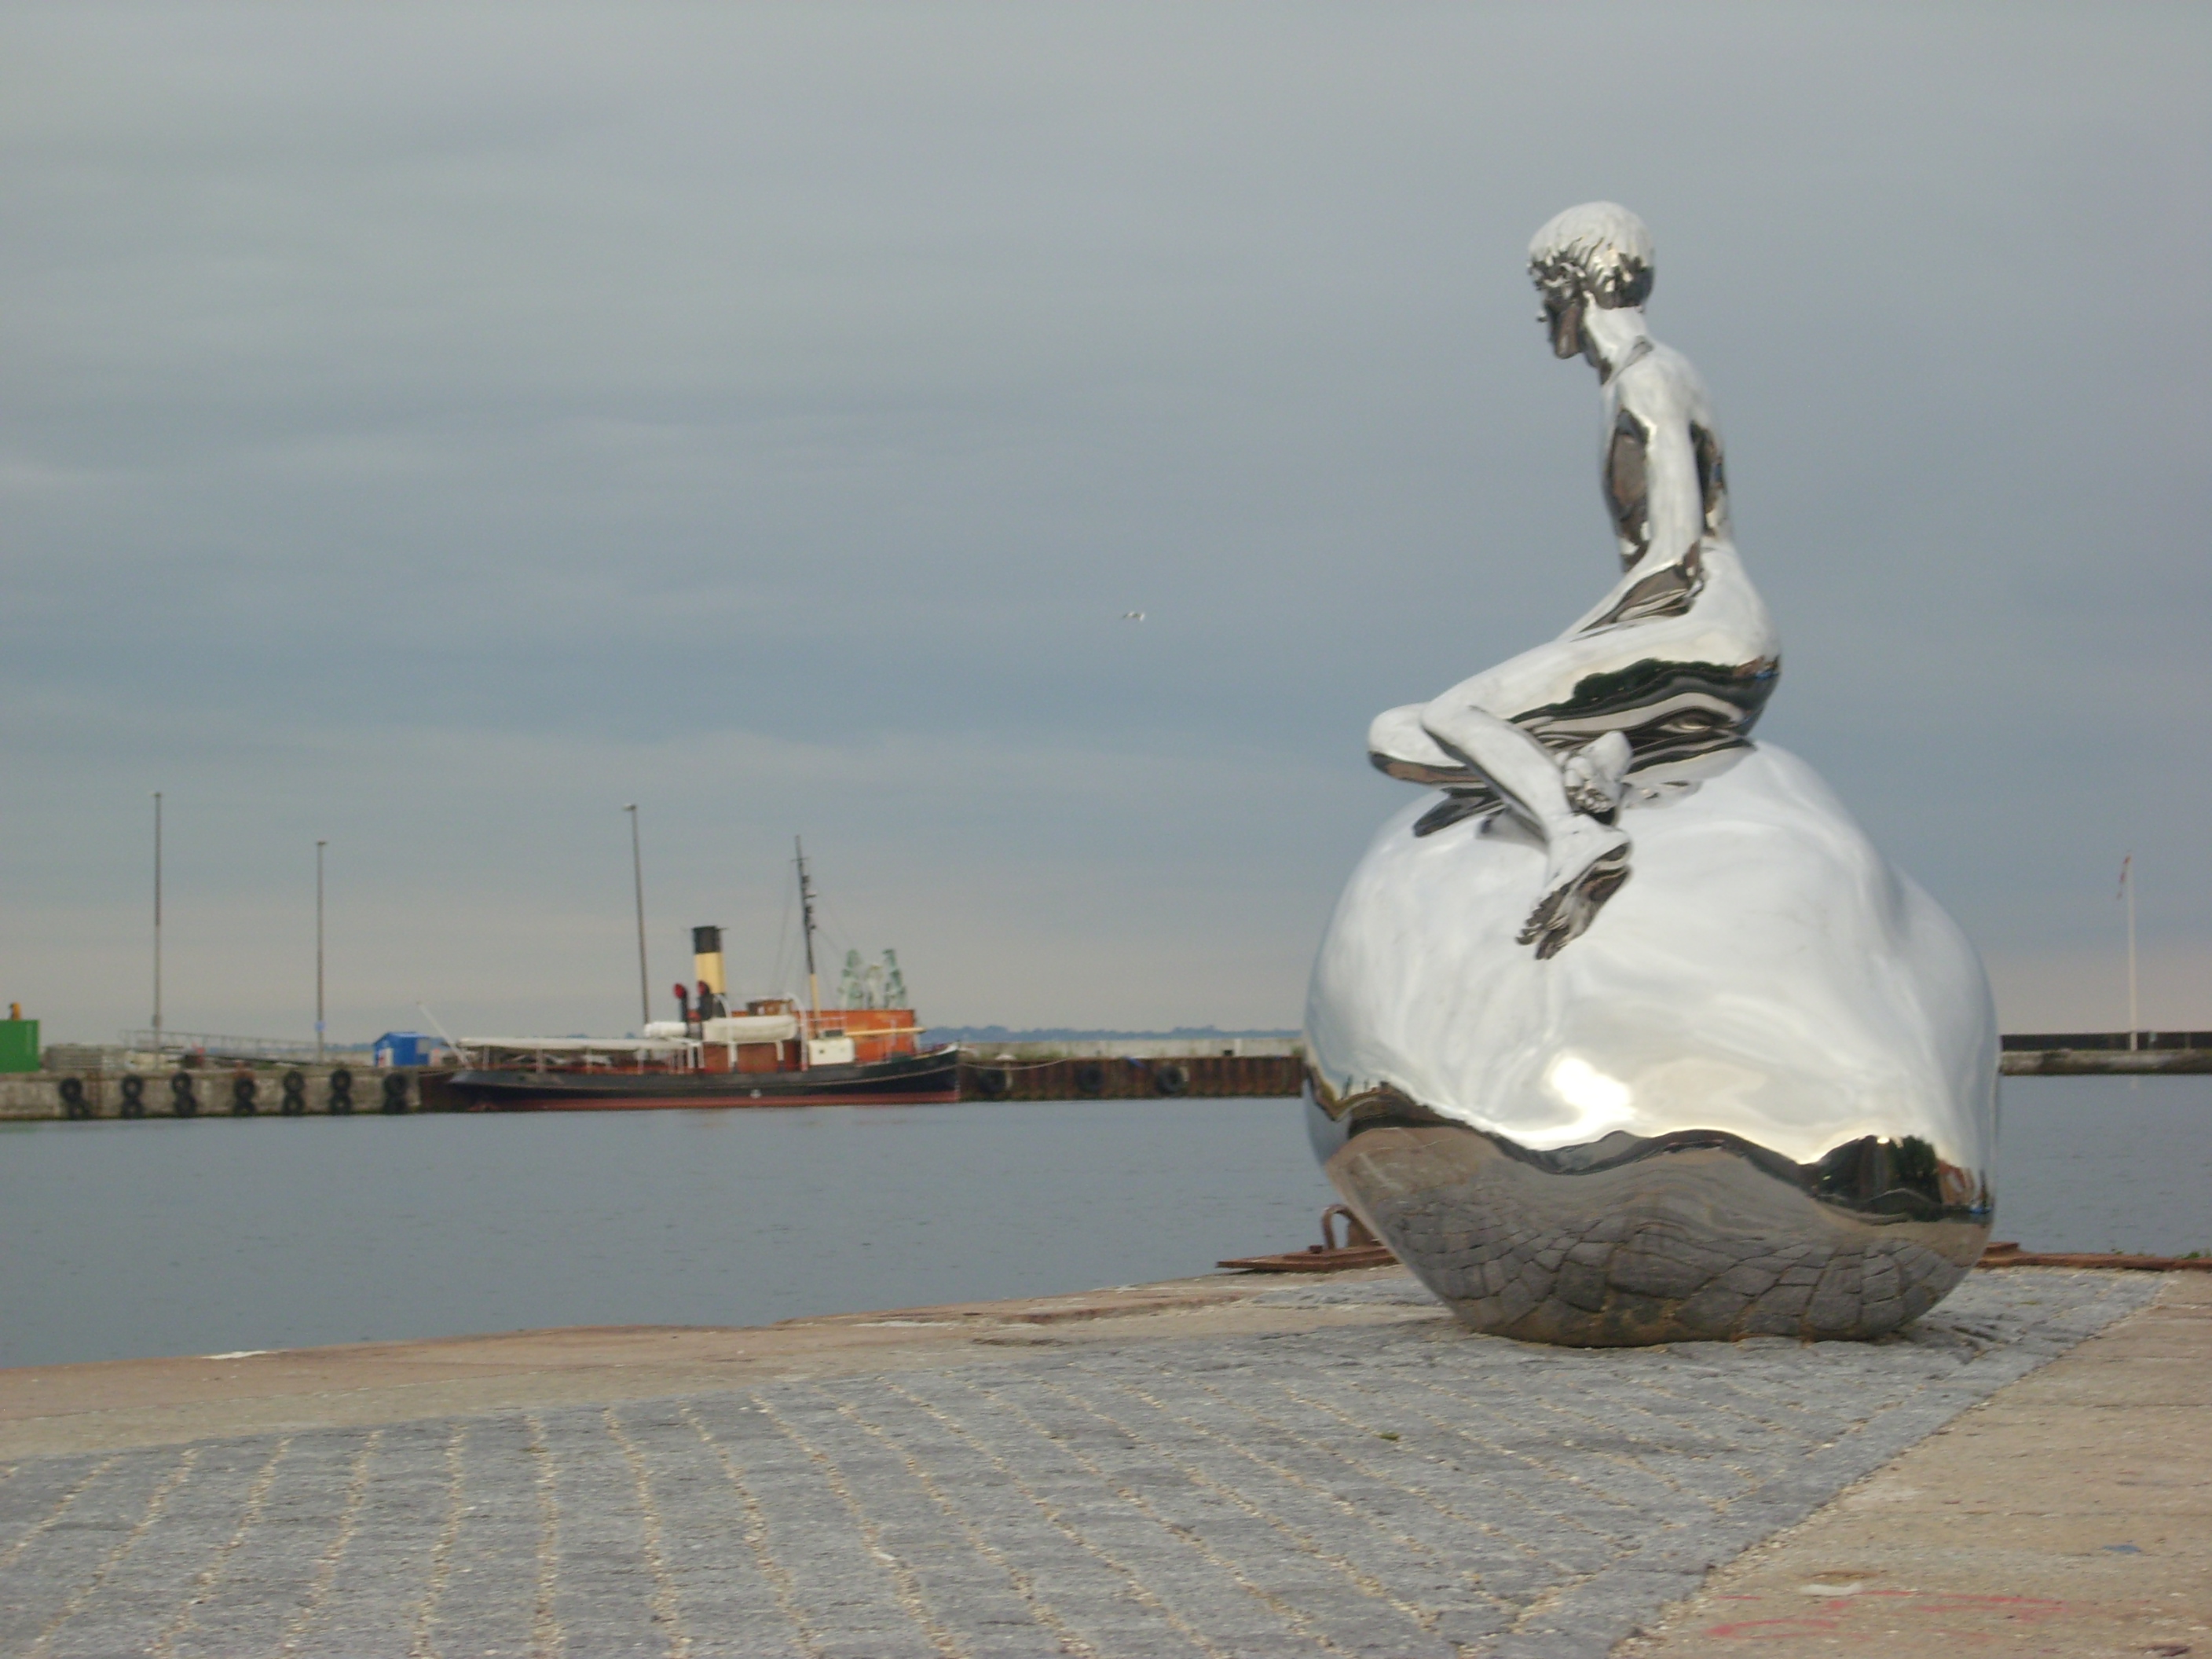 Das männliche Pendant zur Mermaid in Kopenhagen sitzt in Helsingør